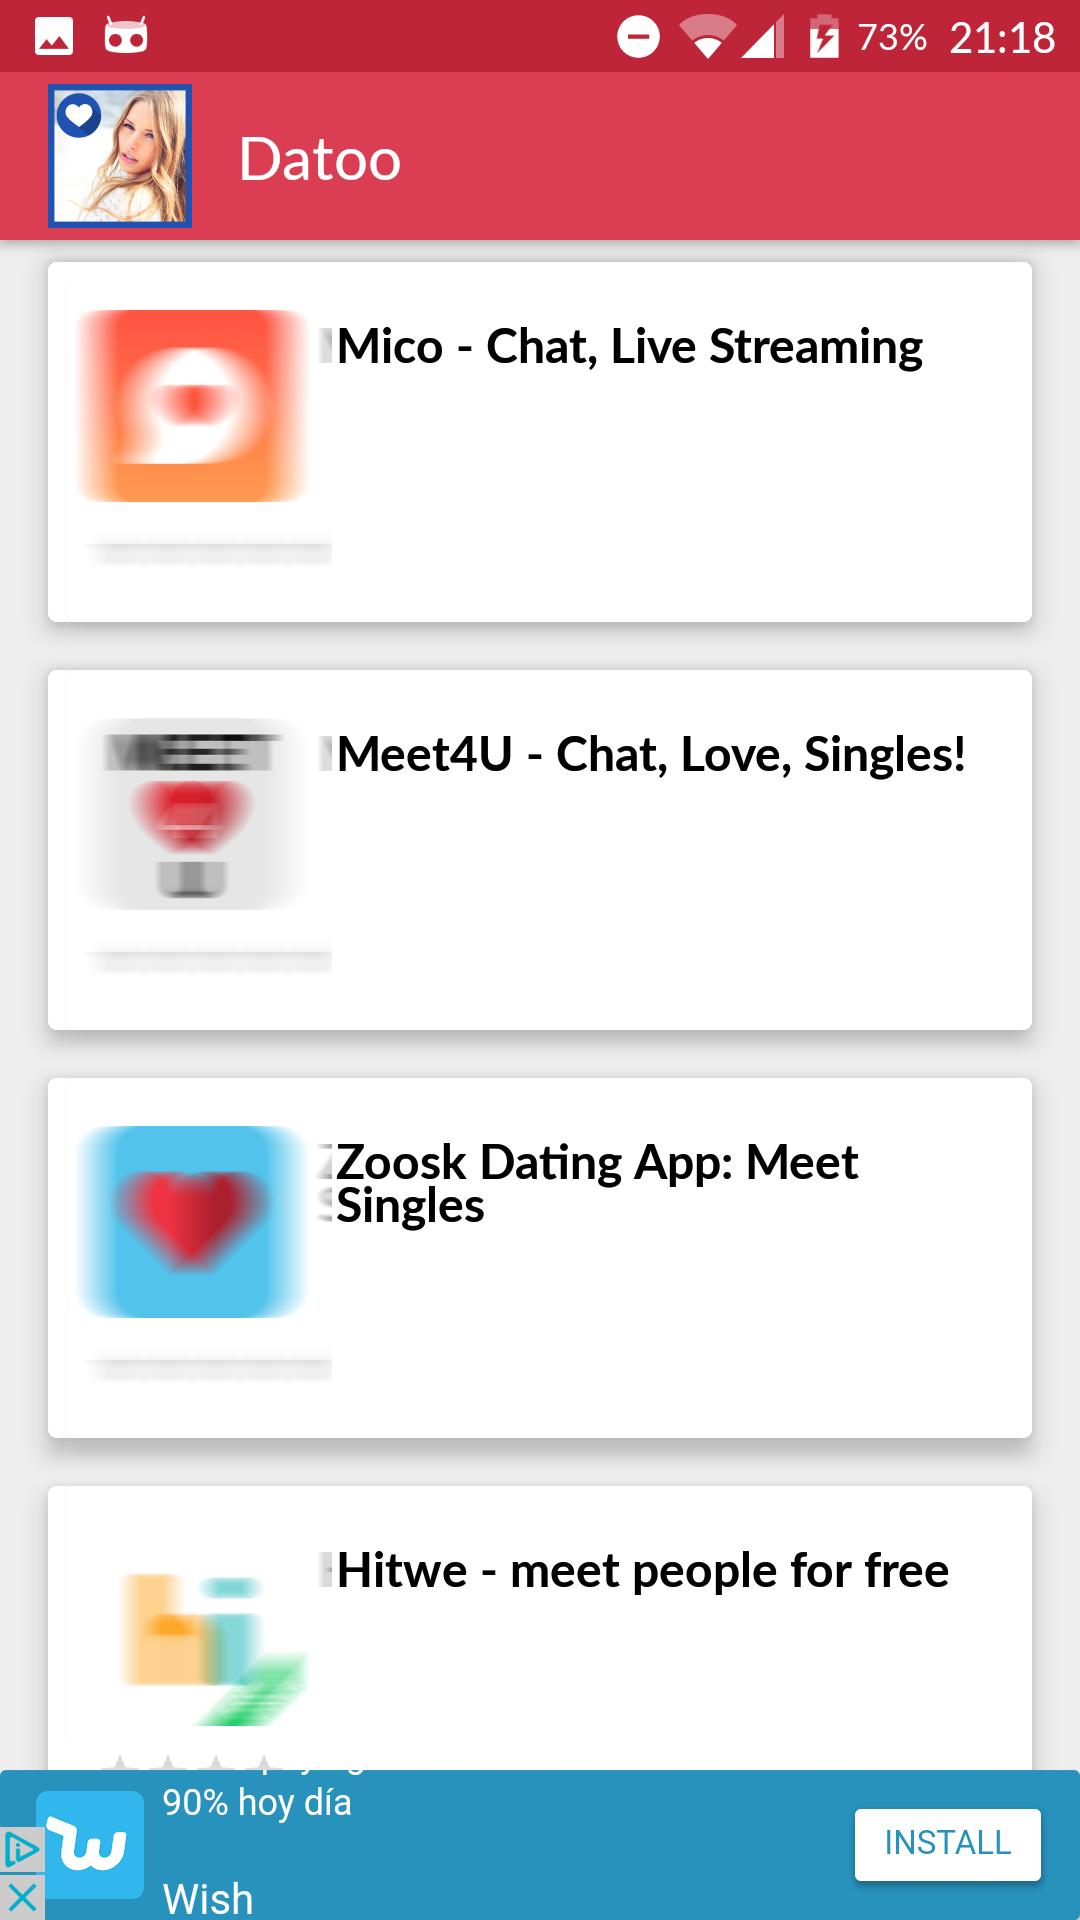 welche kostenlose dating app ist die beste